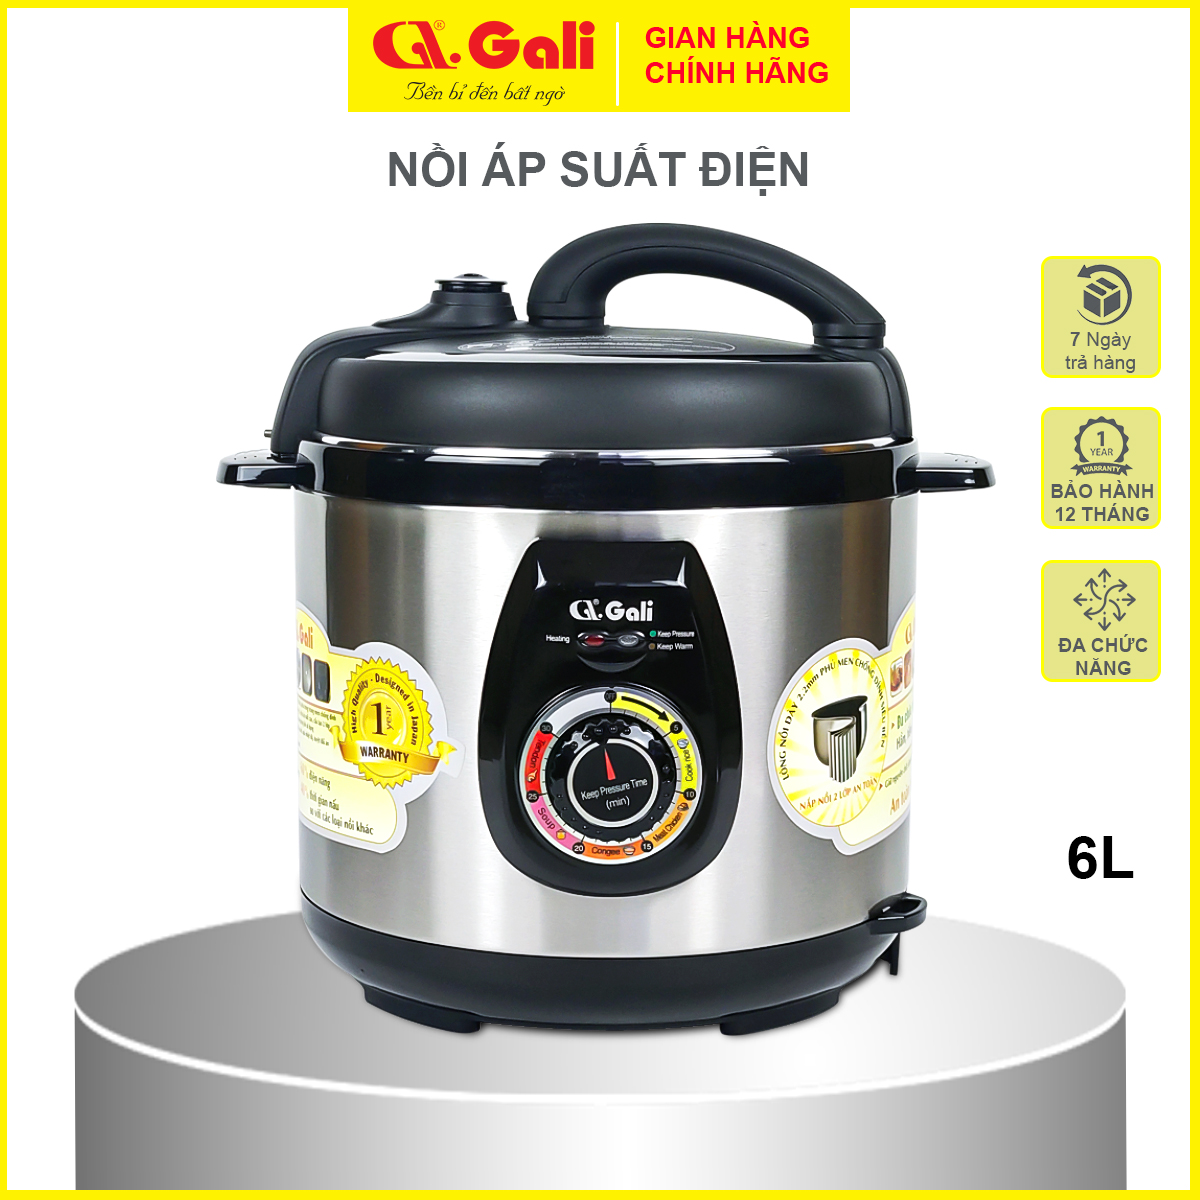 Nồi áp suất Gali GL-1626, dung tích 17lít, sử dụng hoàn hảo cho các nhà hàng, quán ăn, trường học, hàng chính hãng 100%, bảo hành 24 tháng